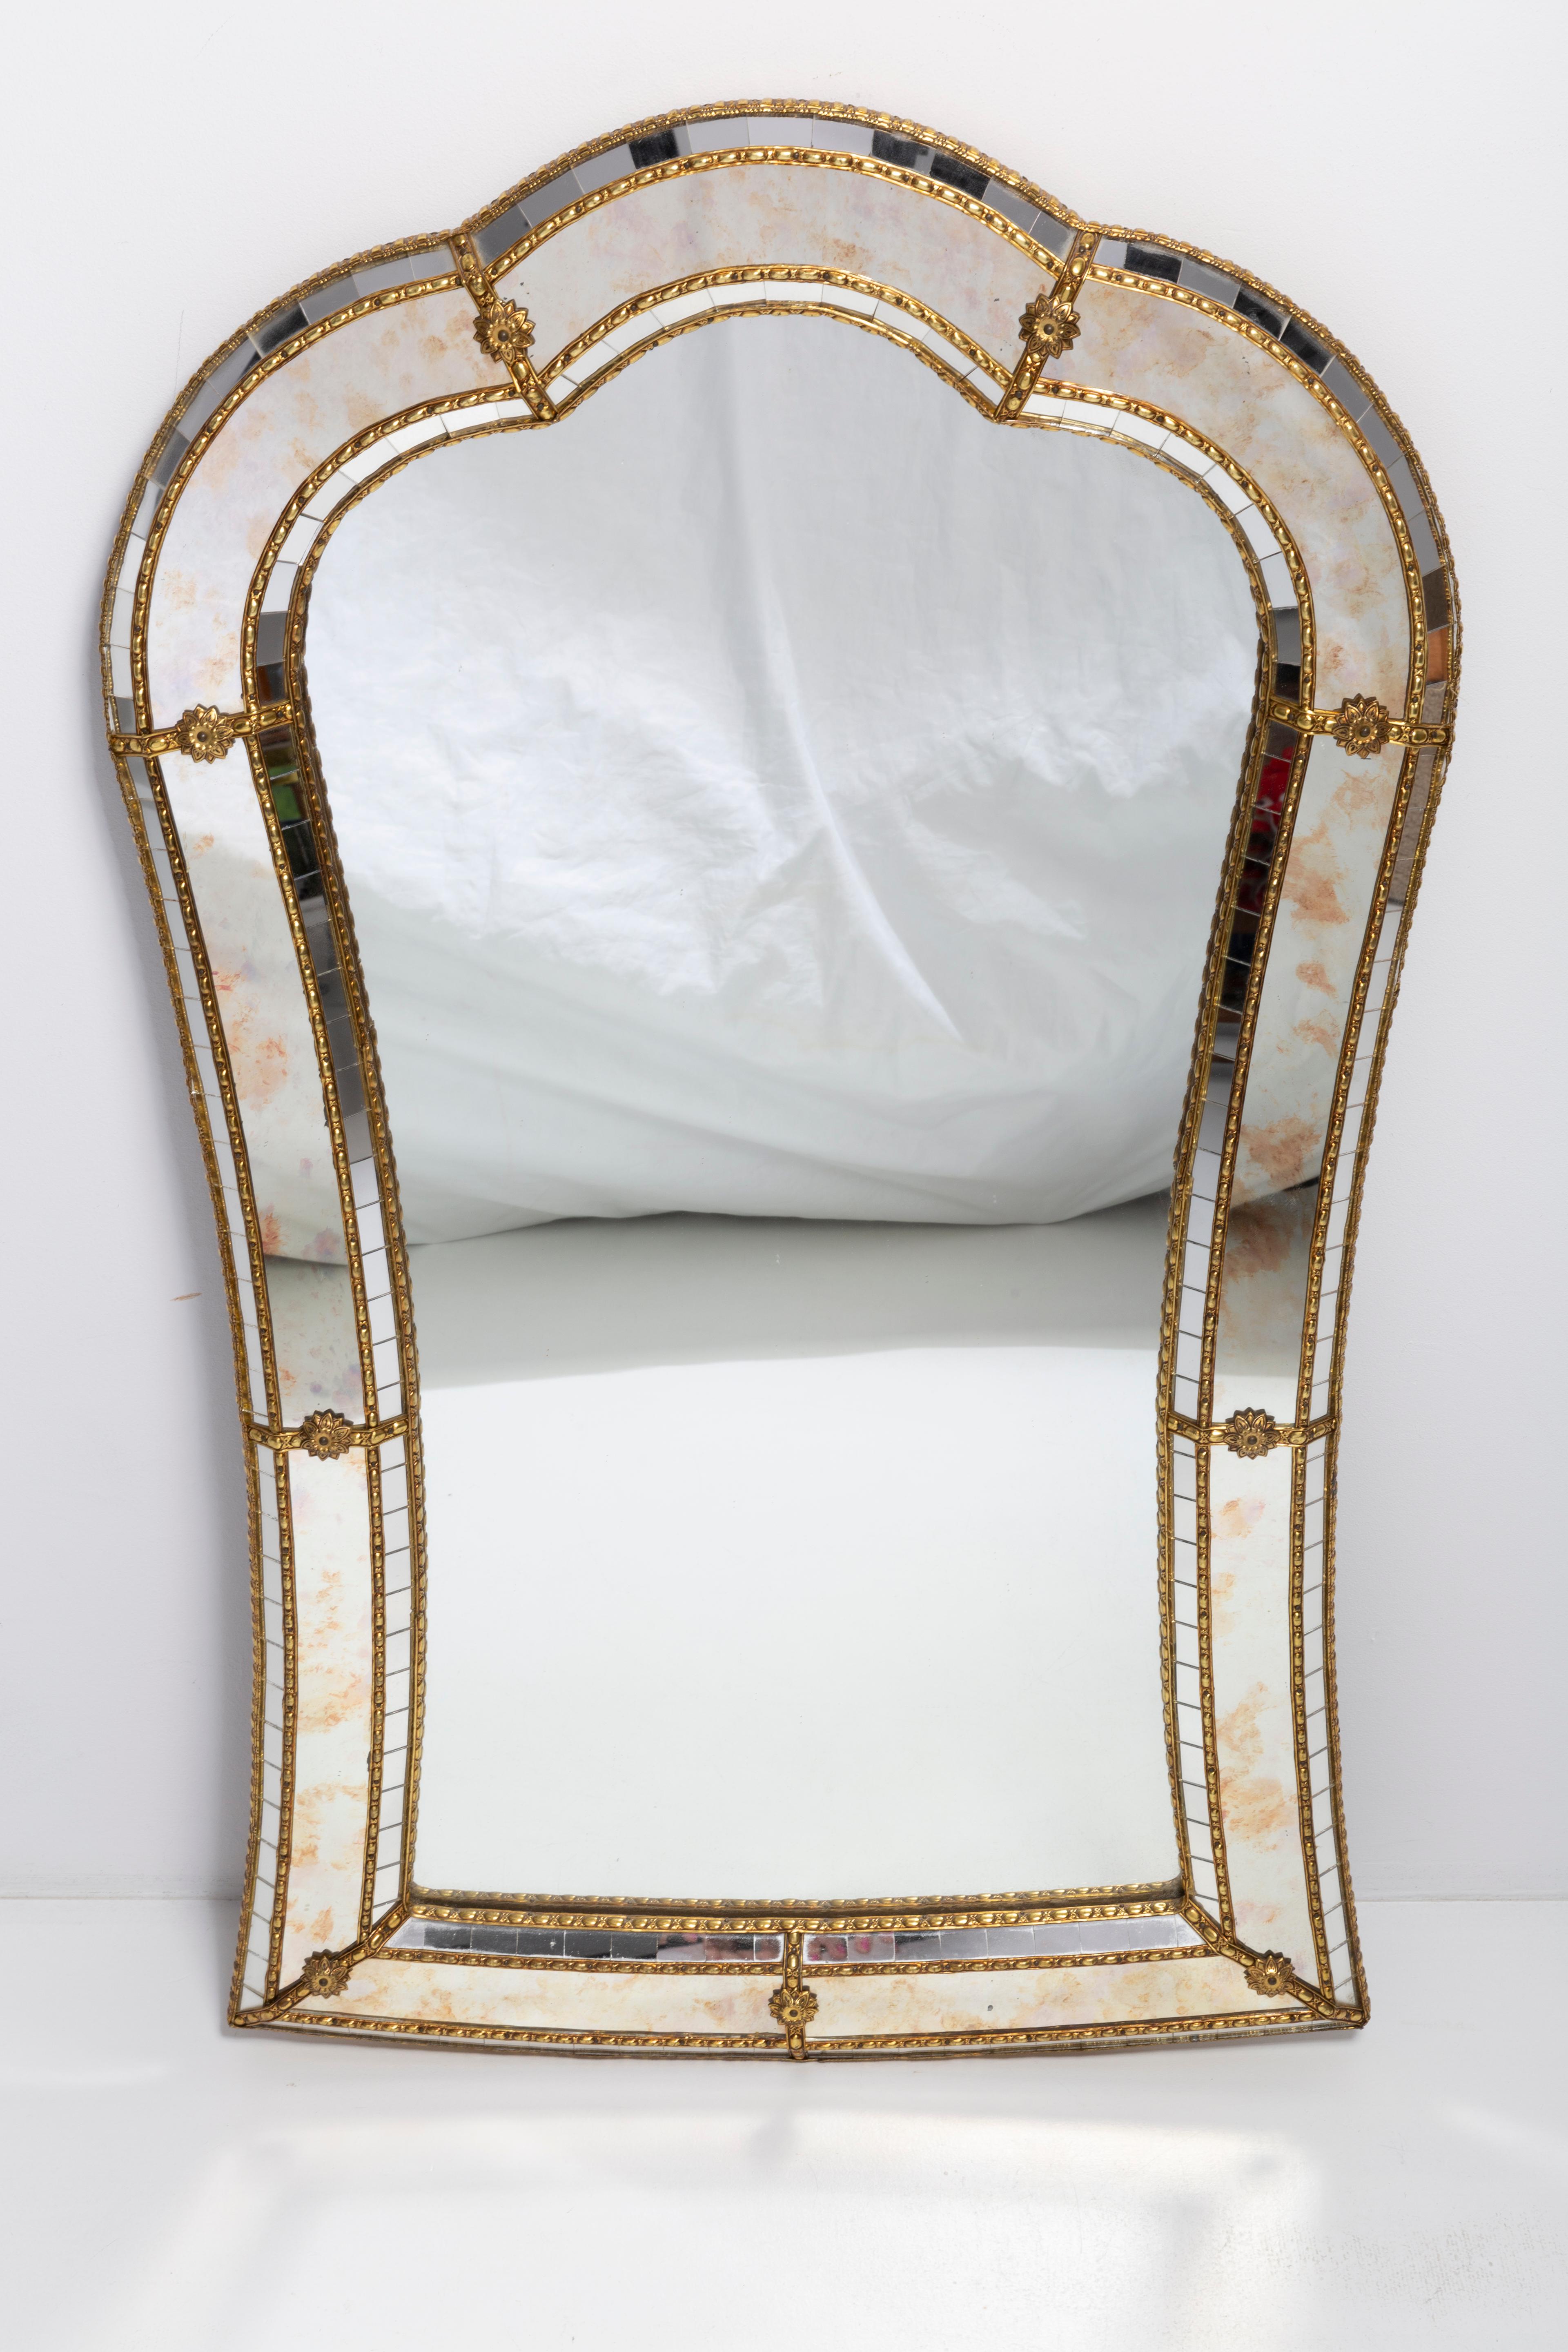 Ein schöner mittelgroßer Spiegel in einem goldenen Zierrahmen aus Italien. Sieht absolut fantastisch aus! Der Rahmen ist aus Metall gefertigt. Spiegel ist in sehr gutem Vintage-Zustand, keine Schäden oder Risse im Rahmen. Original Glas. Ein schönes